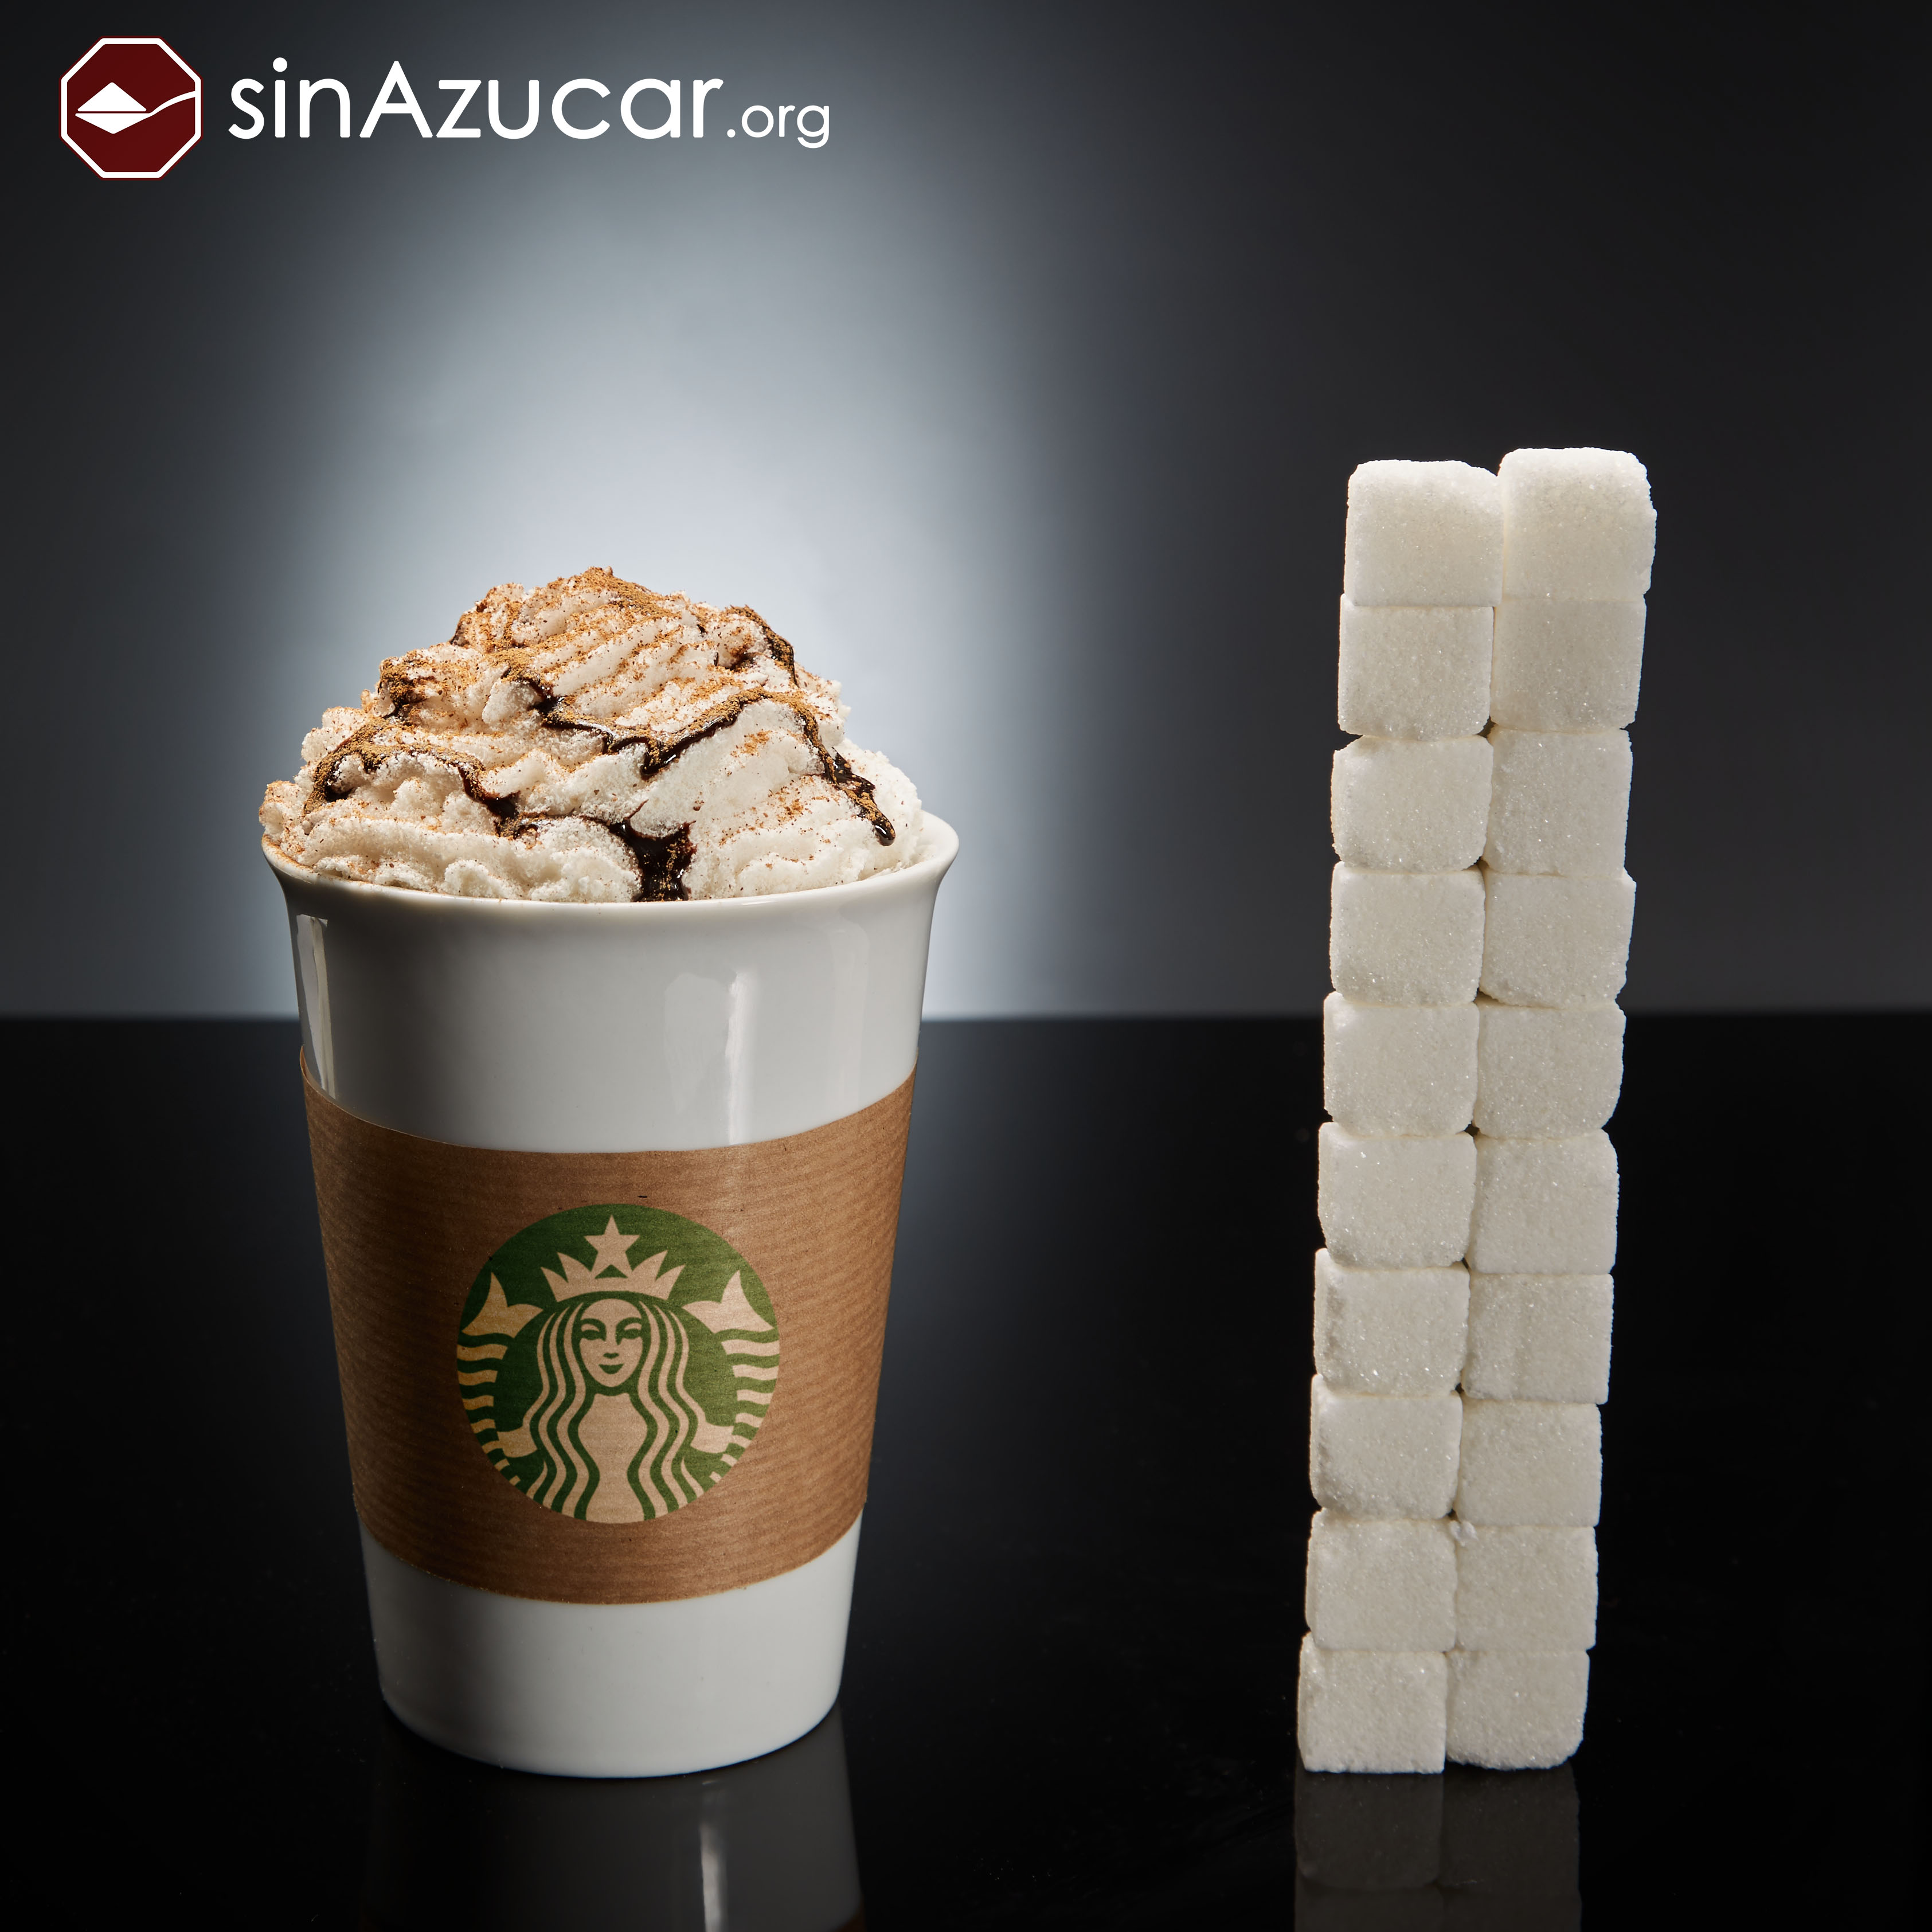 Azúcares añadidos en un café de Starbucks - sinAzucar.org